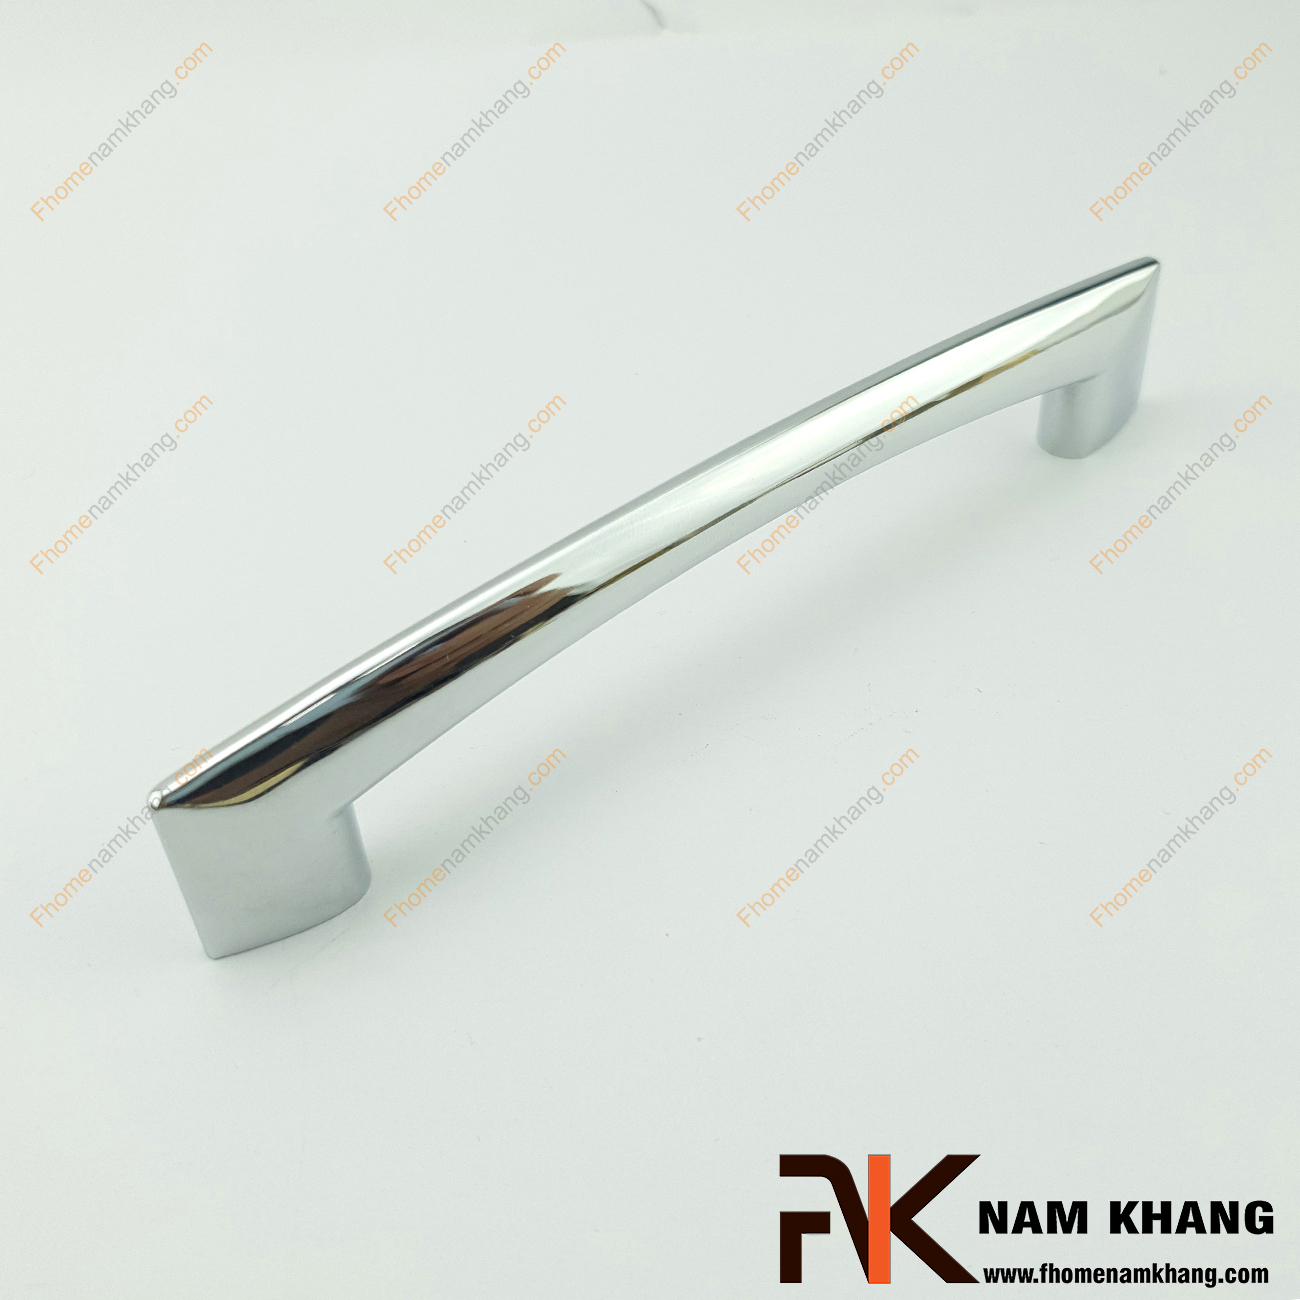 Thiết kế sản phẩm Tay nắm tủ màu ghi bóng NK290-128NB có thiết kế đơn giản với phần thân đặc dạng tròn và phần đế dẹp ở hai đầu của tay nắm